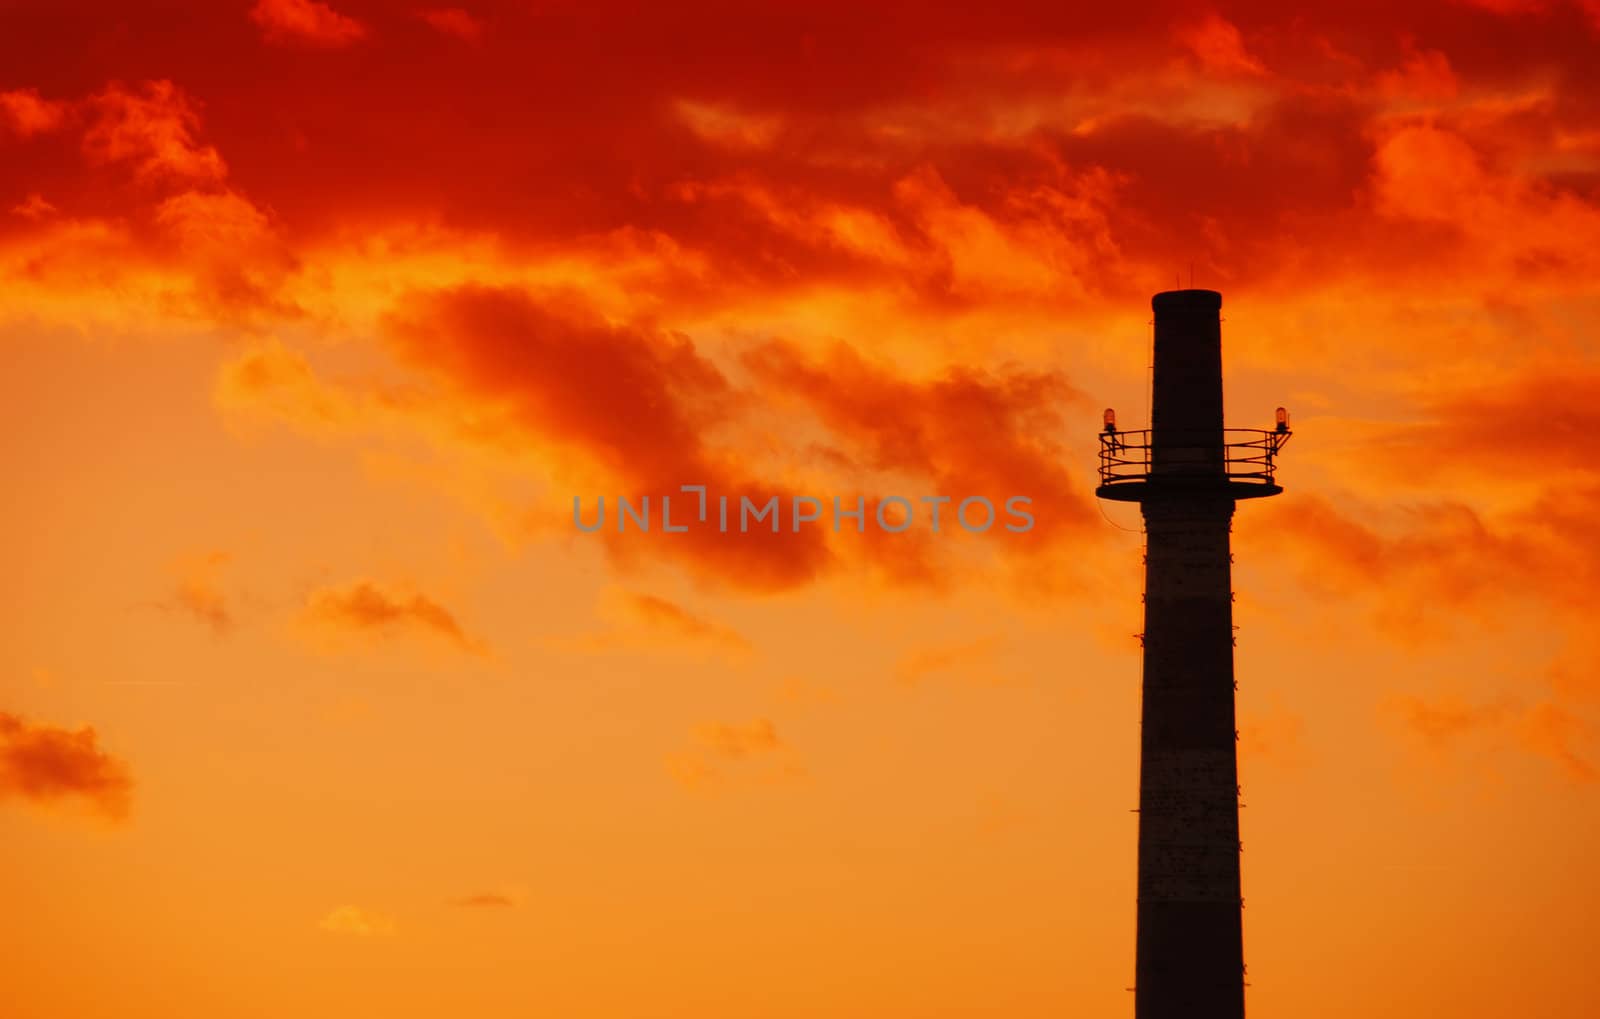 Industrial chimney at sunset by drakodav